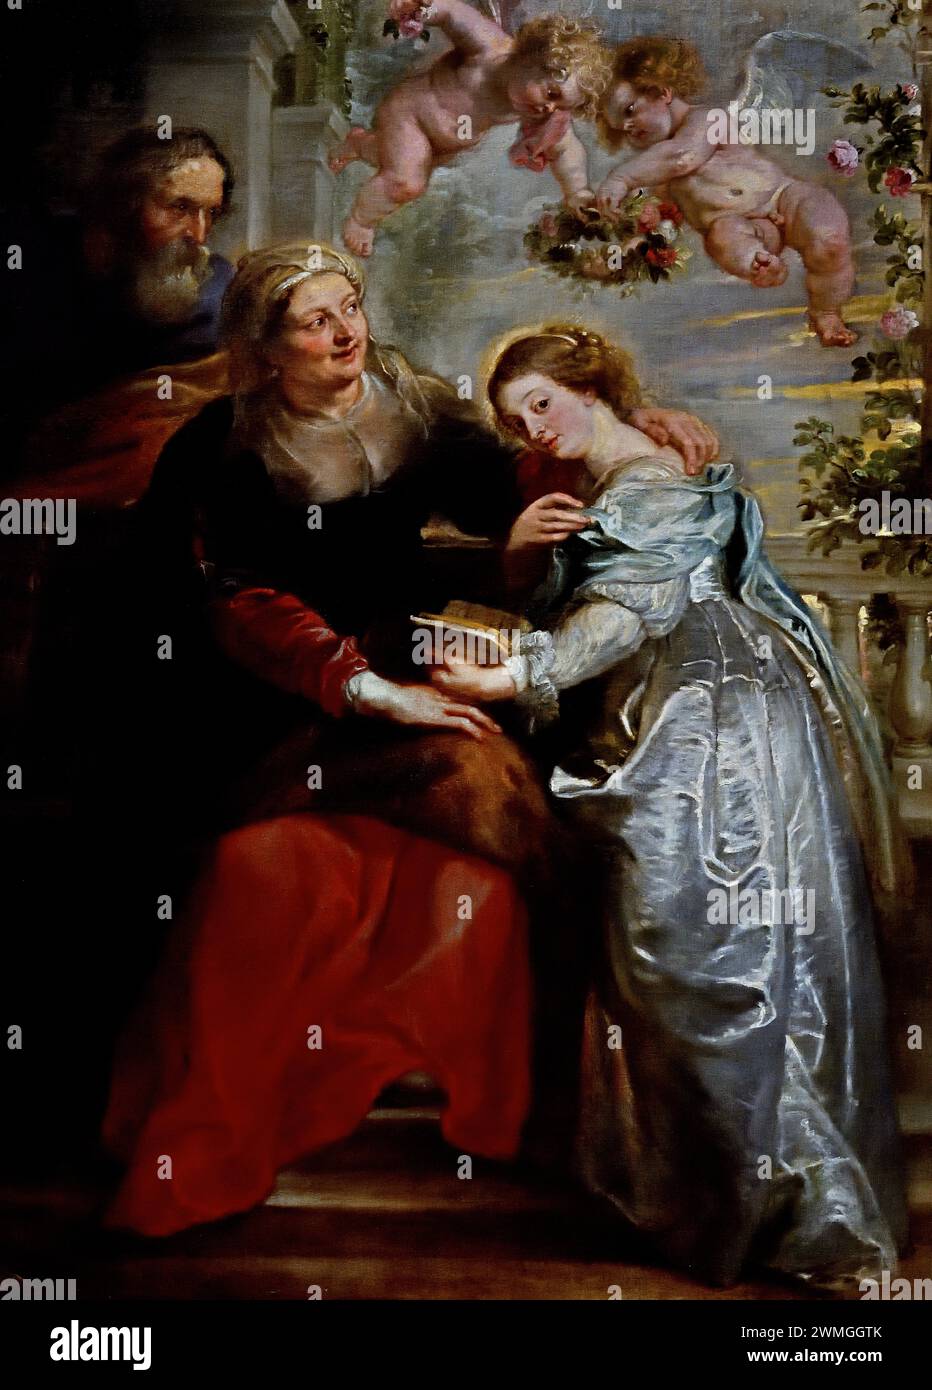 Die Erziehung Mariens 1630-1635 von Peter Paul Rubens. (1577-1640) Flämischer Künstler und Diplomat, Flämisch, Königliches Barockmuseum der Schönen Künste, Antwerpen, Belgien, Belgien. Stockfoto